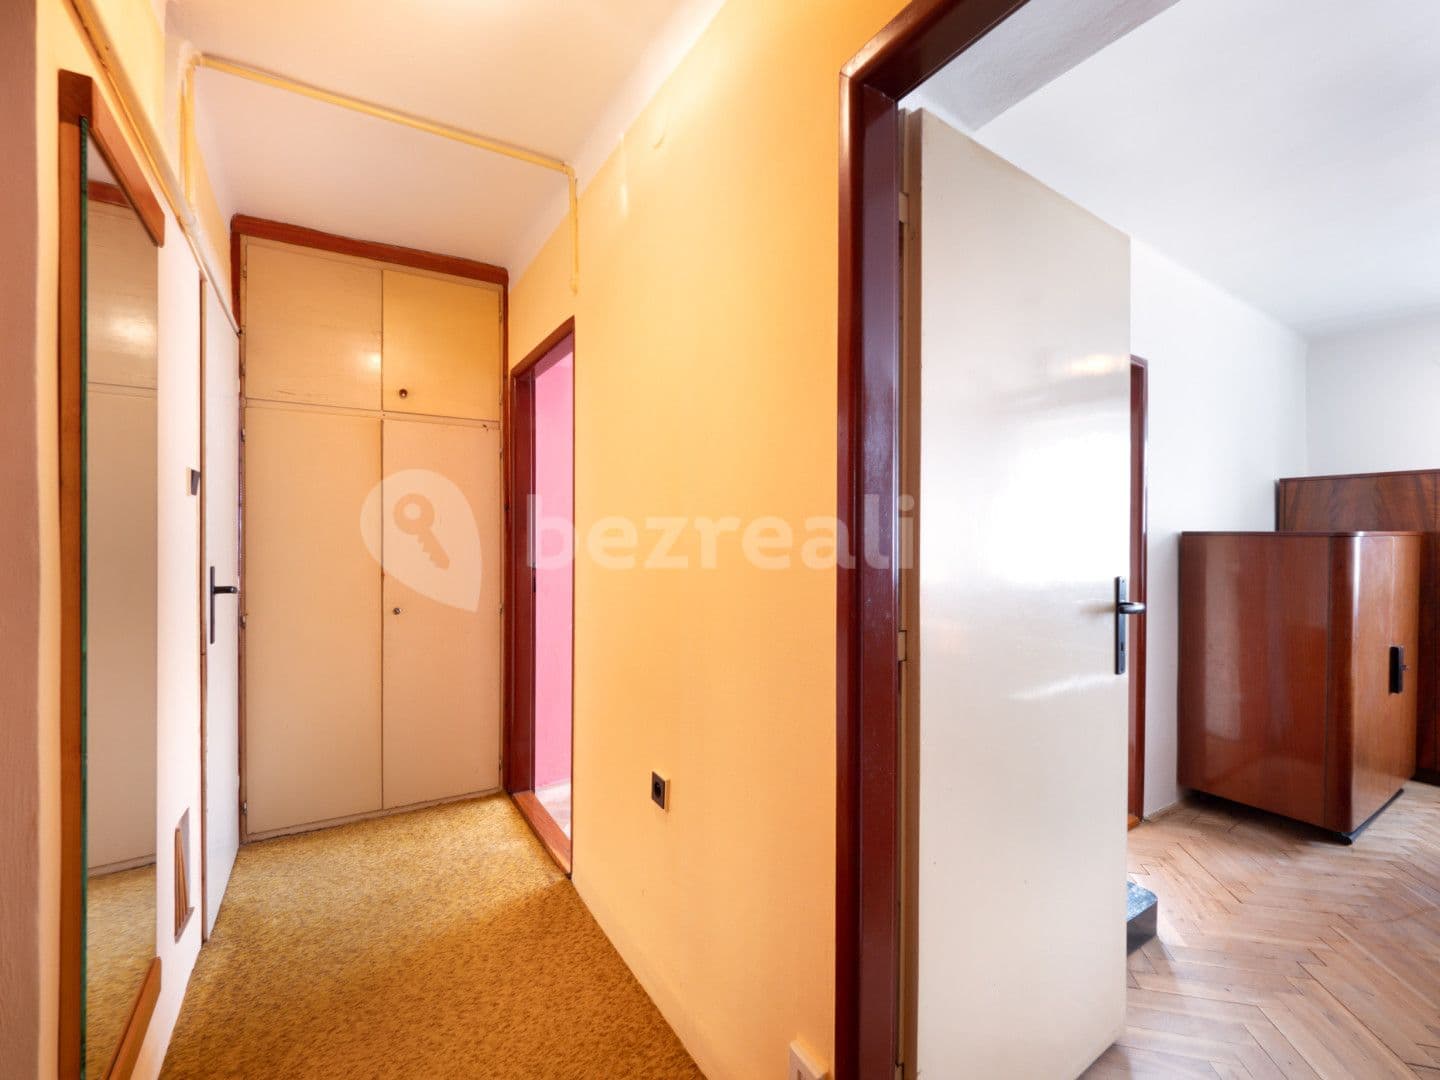 3 bedroom flat for sale, 60 m², Ke zvonici, Prague, Prague